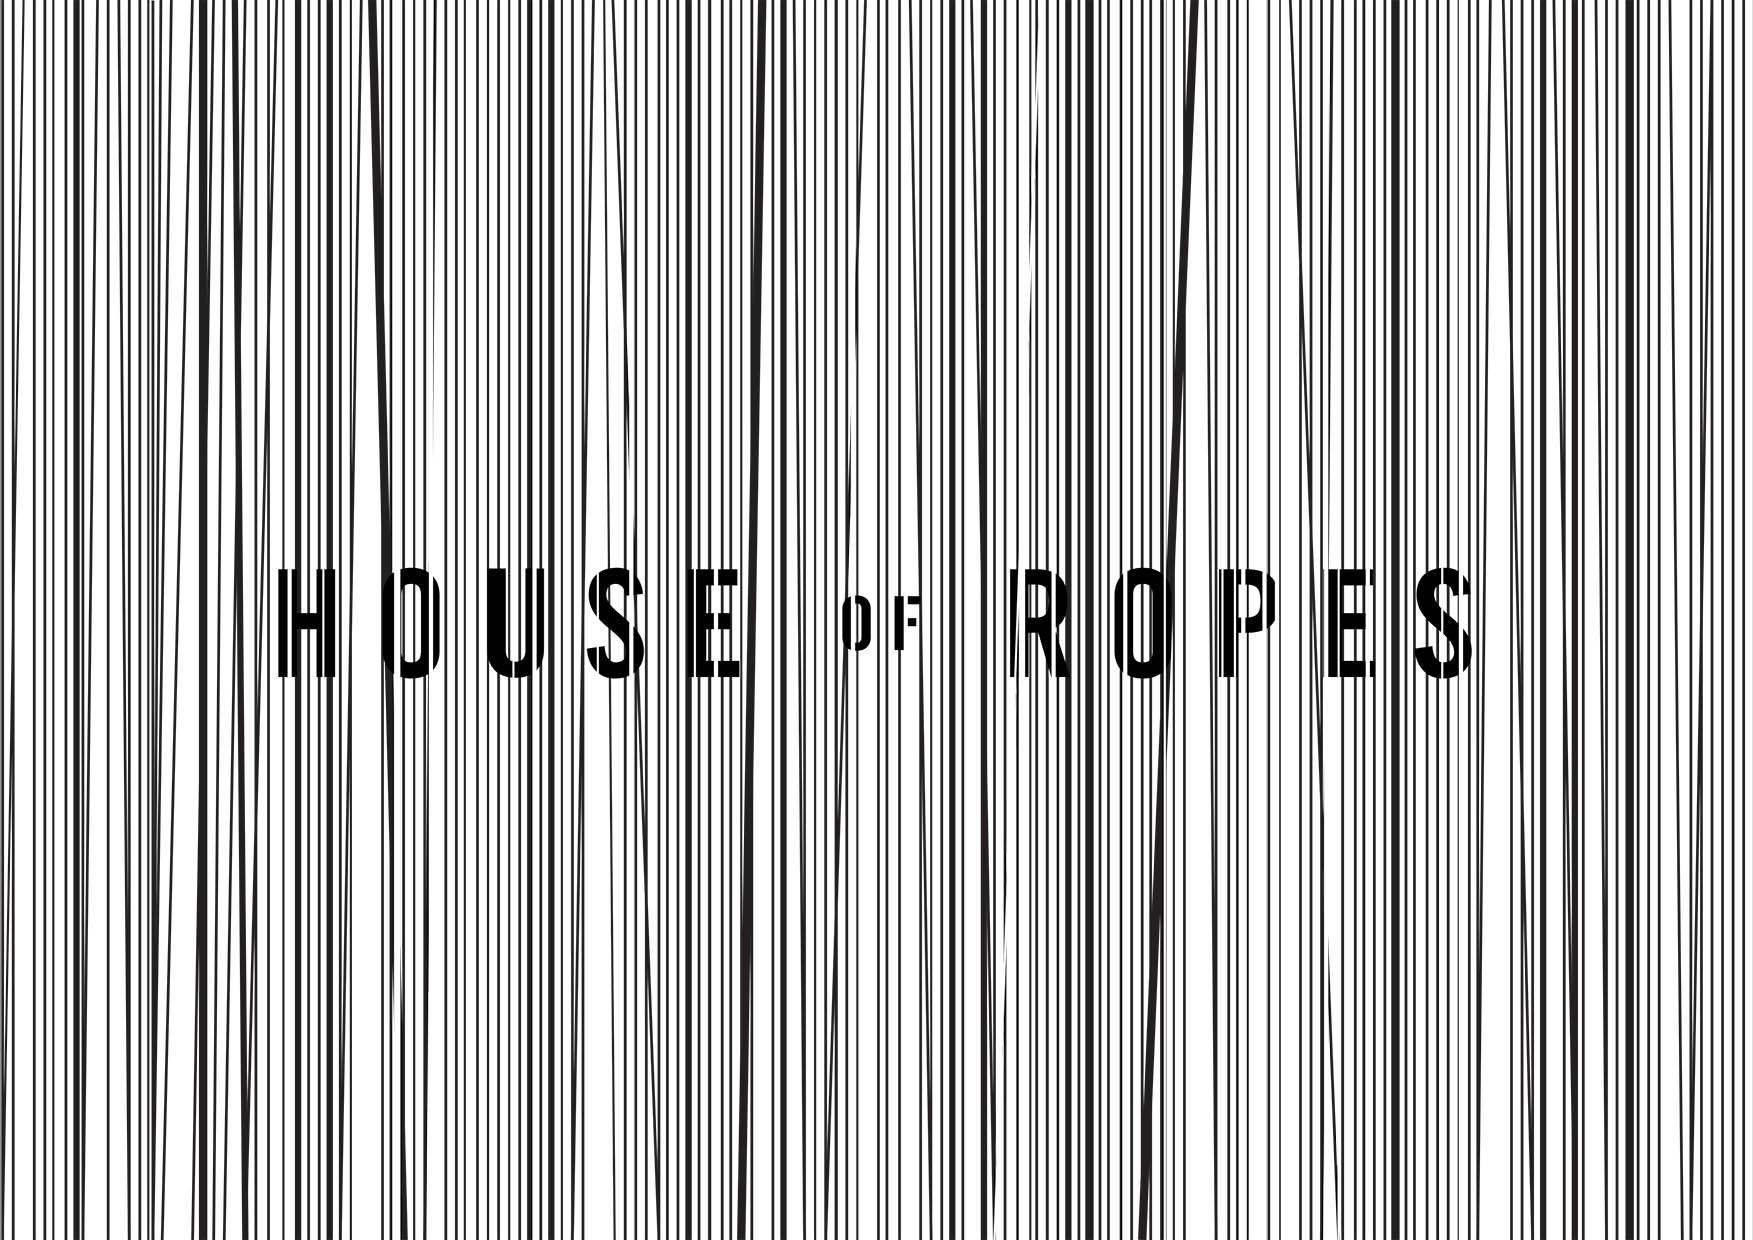 HOUSE_OF_ROPES_LOGO-1.jpg